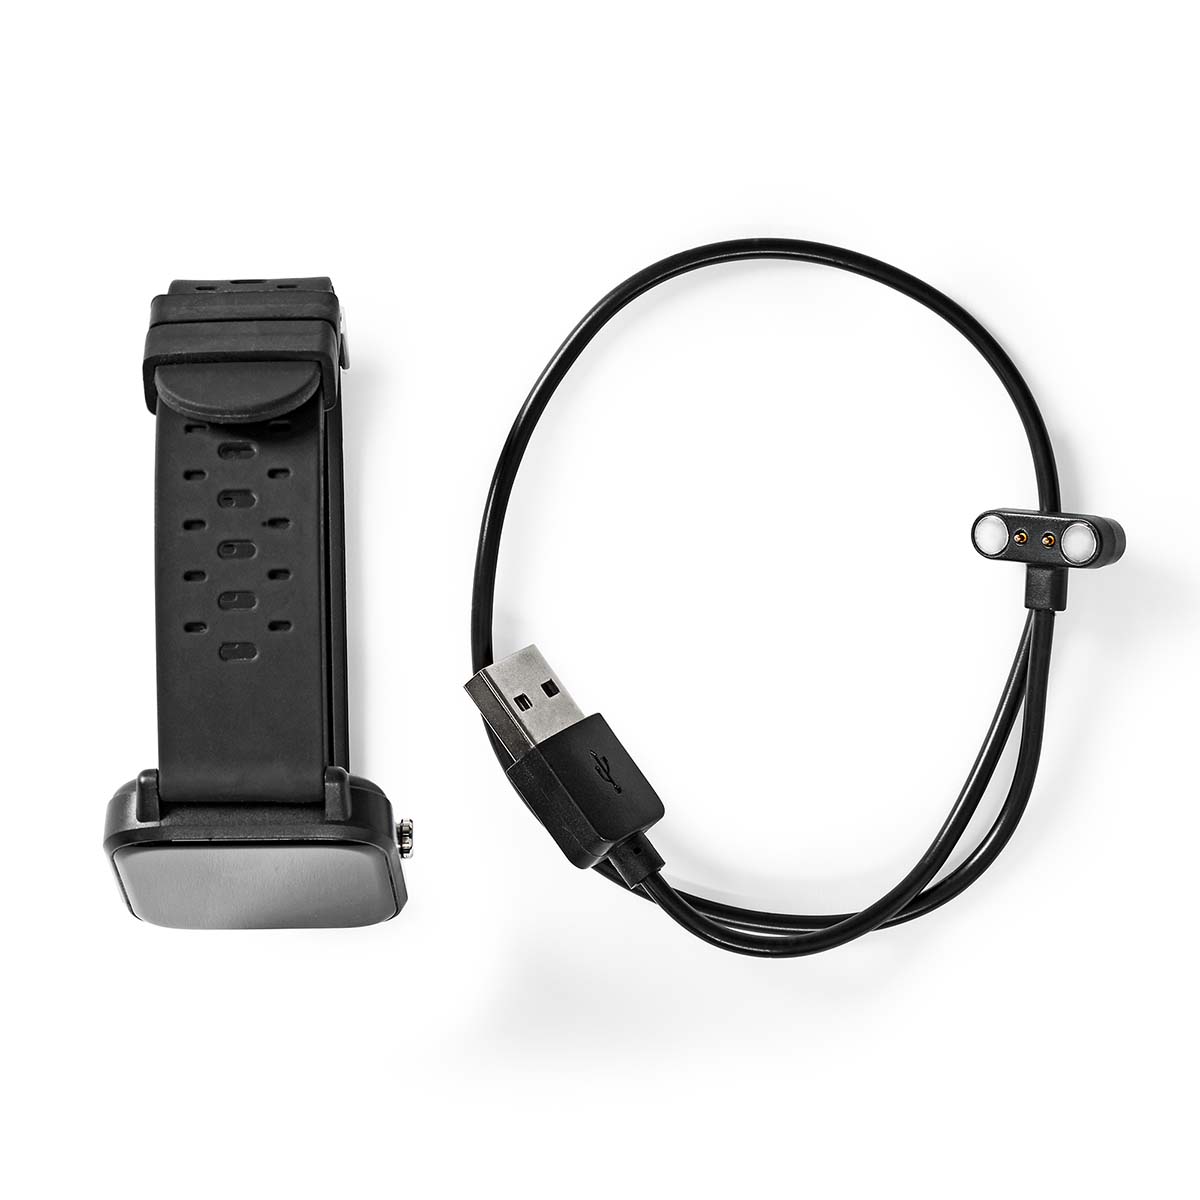 Nedis Smart Watch IP68 Waterproof